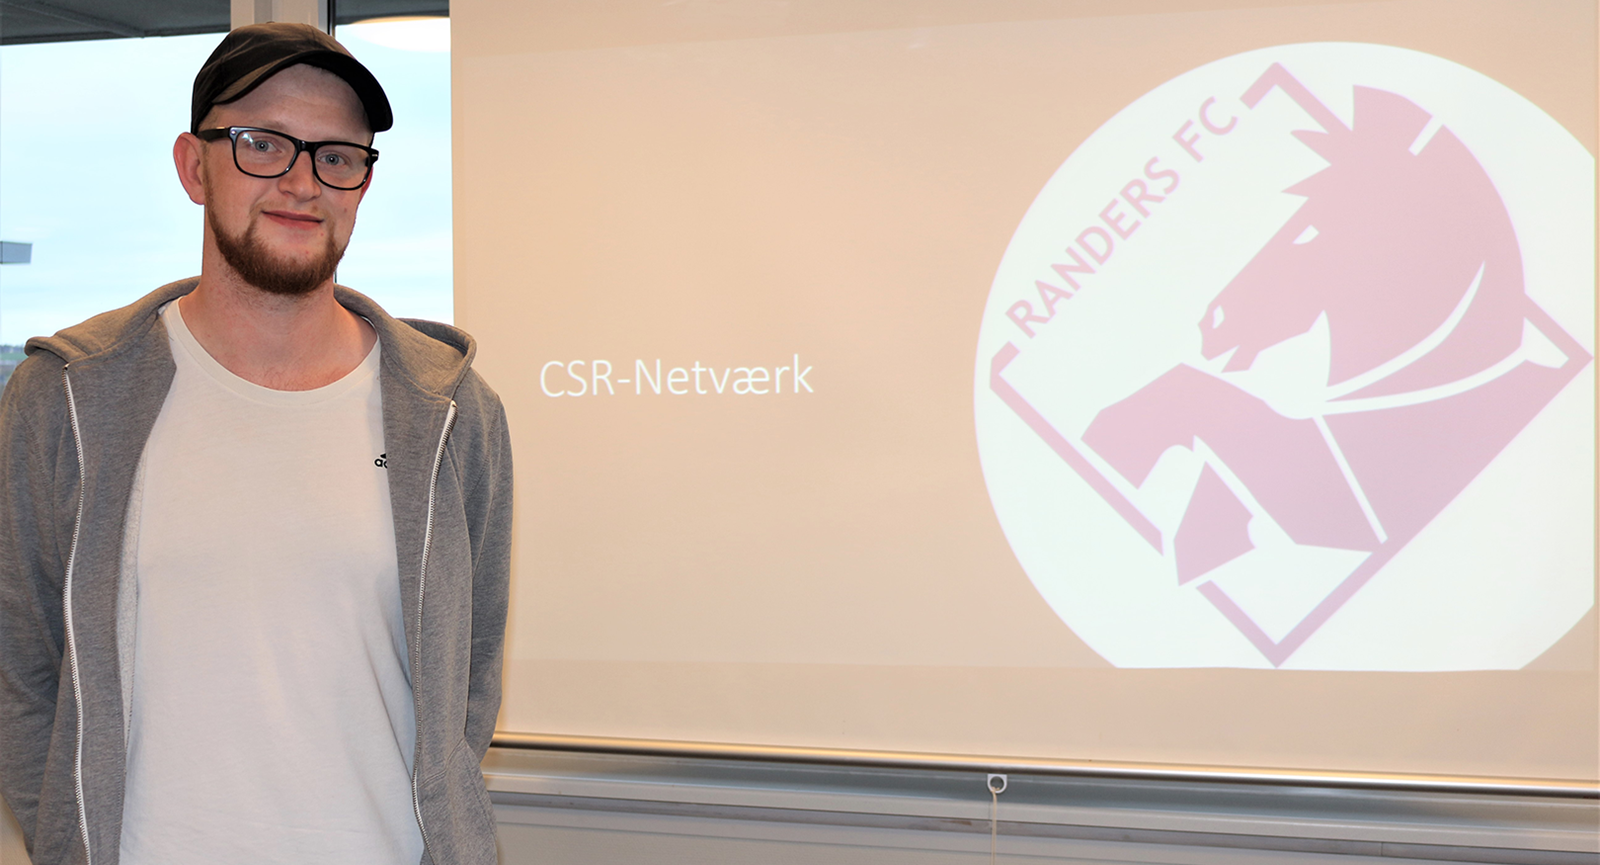 Jonas foran skærm med teksten CSR-netværk og logo fra Randers FC